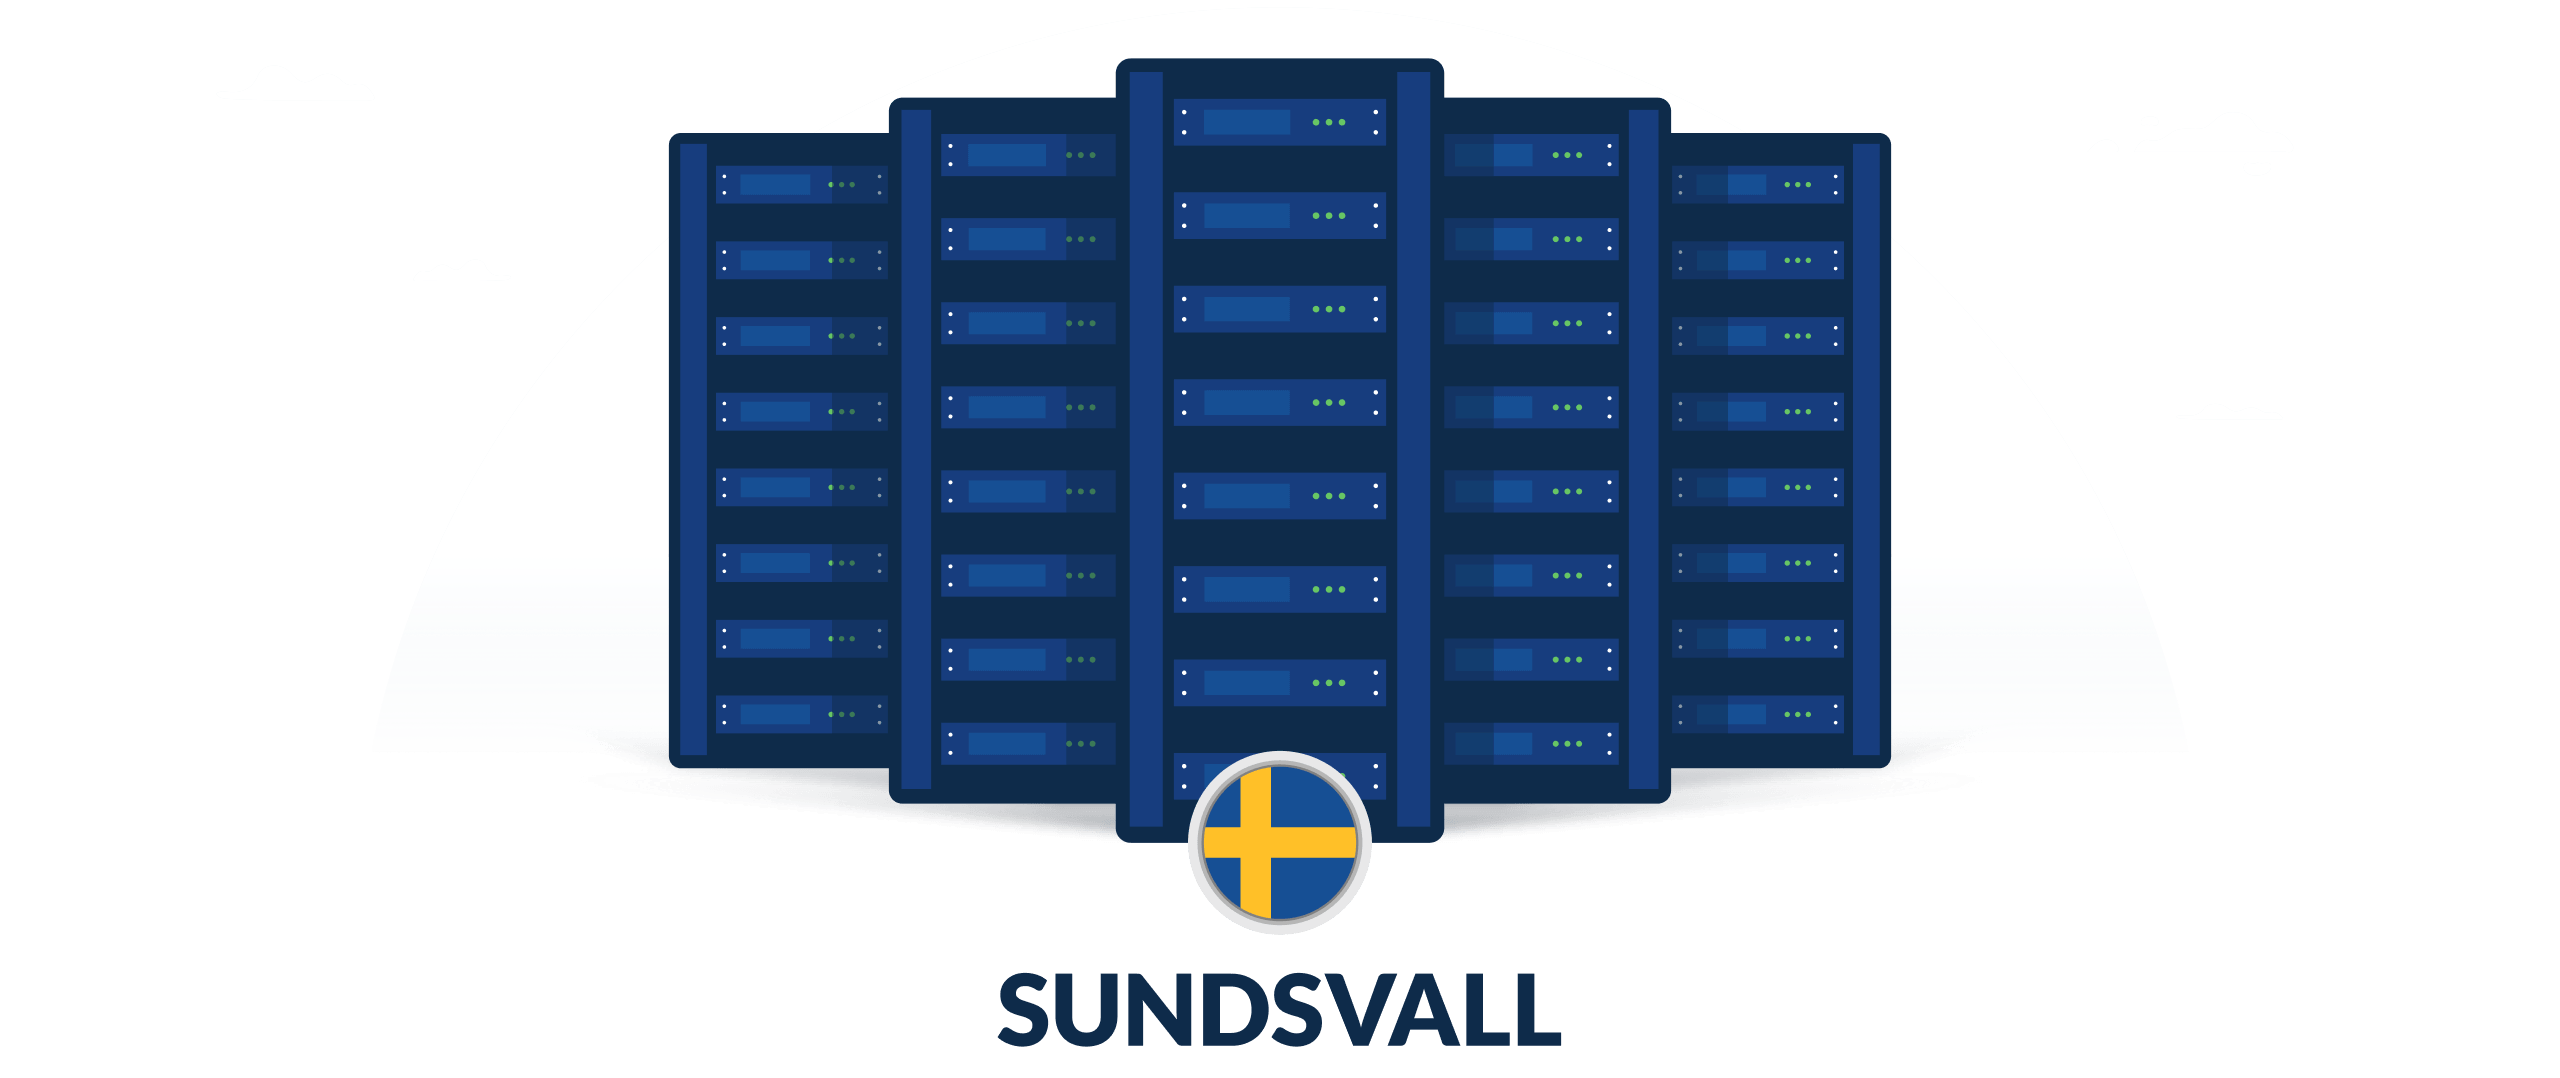 VPN servers in Sundsvall, Sweden